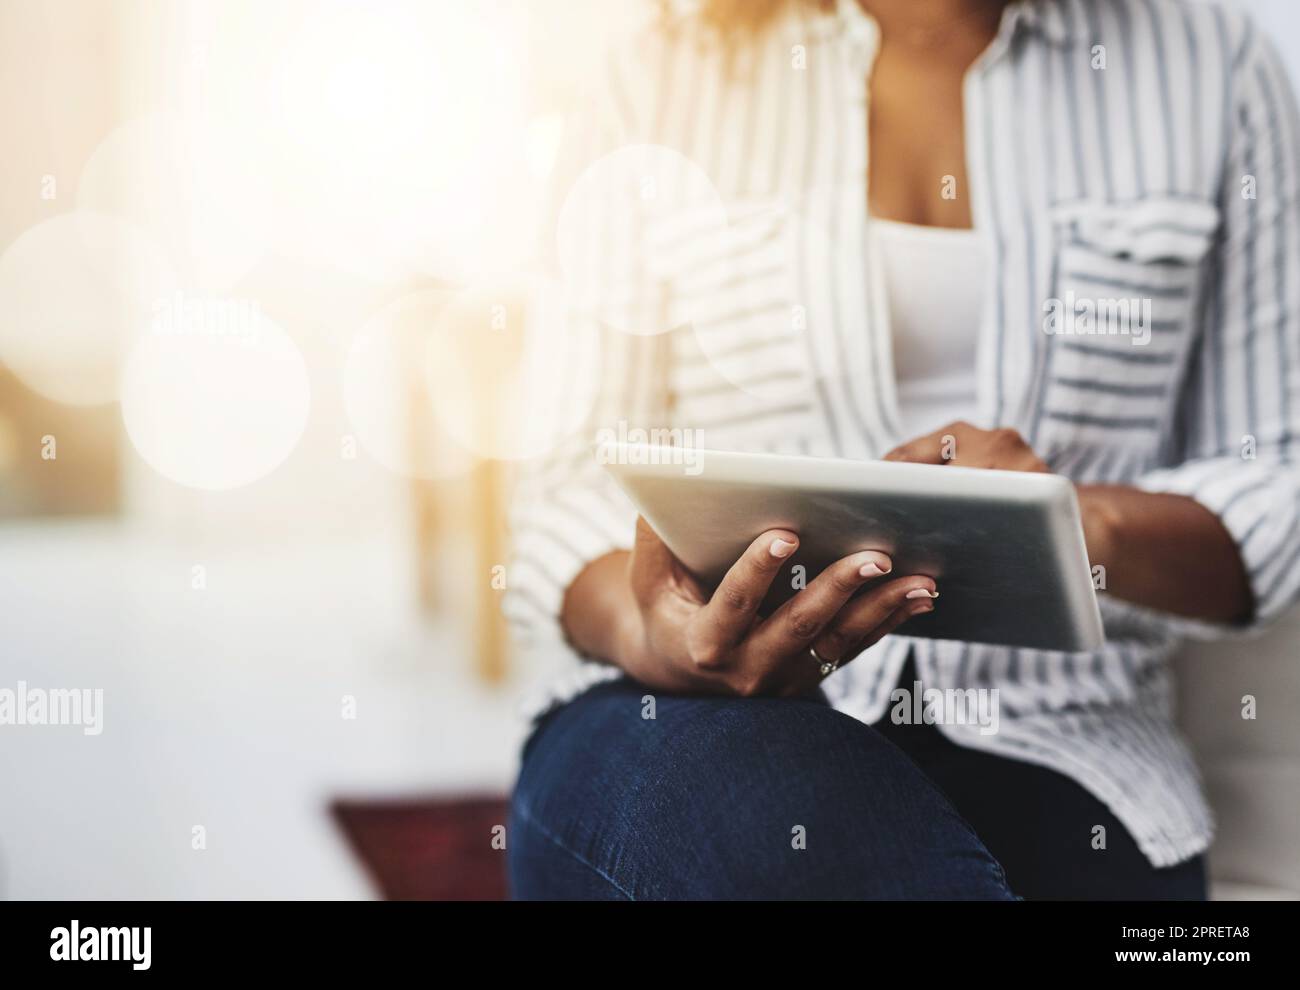 Tablet-Technologie in den Händen einer Frau, die in sozialen Medien surft, im Internet surft oder mit Flare und Copyspace online chattet. Nahaufnahme einer Frau, die eine E-Mail sendet oder Nachrichten liest Stockfoto